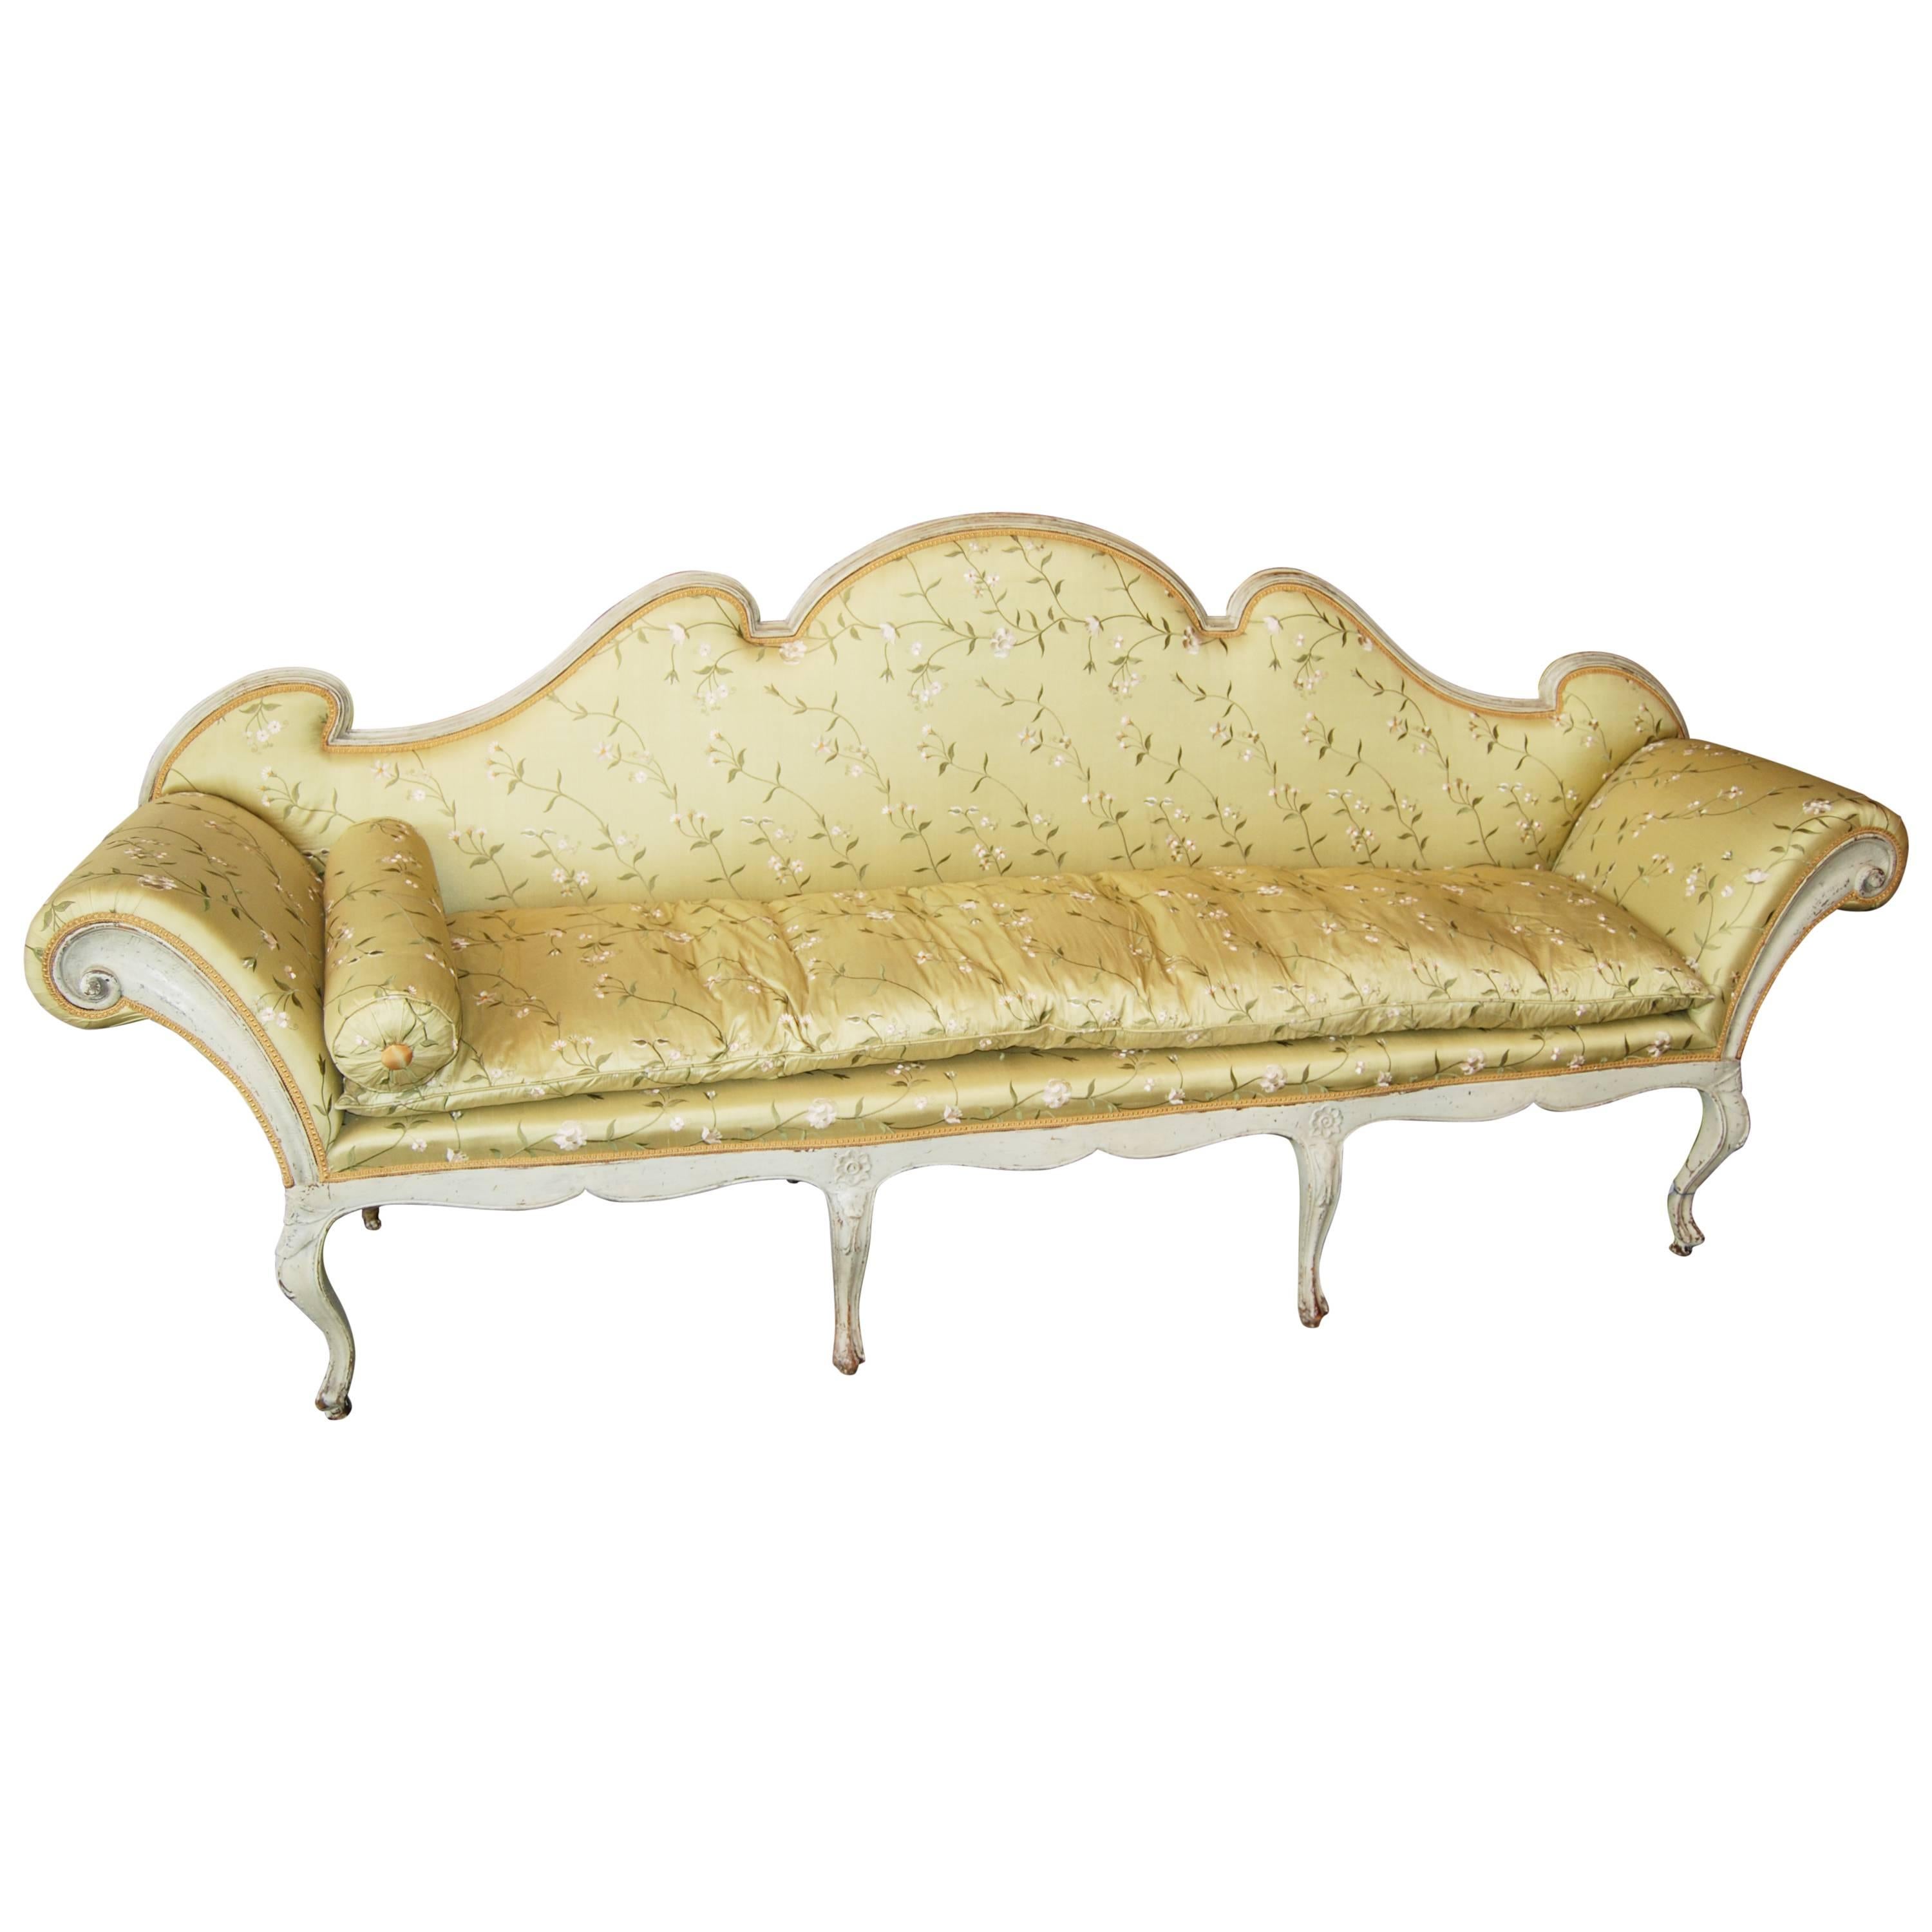 Fabelhaftes venezianisches Canape aus dem 19. Jahrhundert